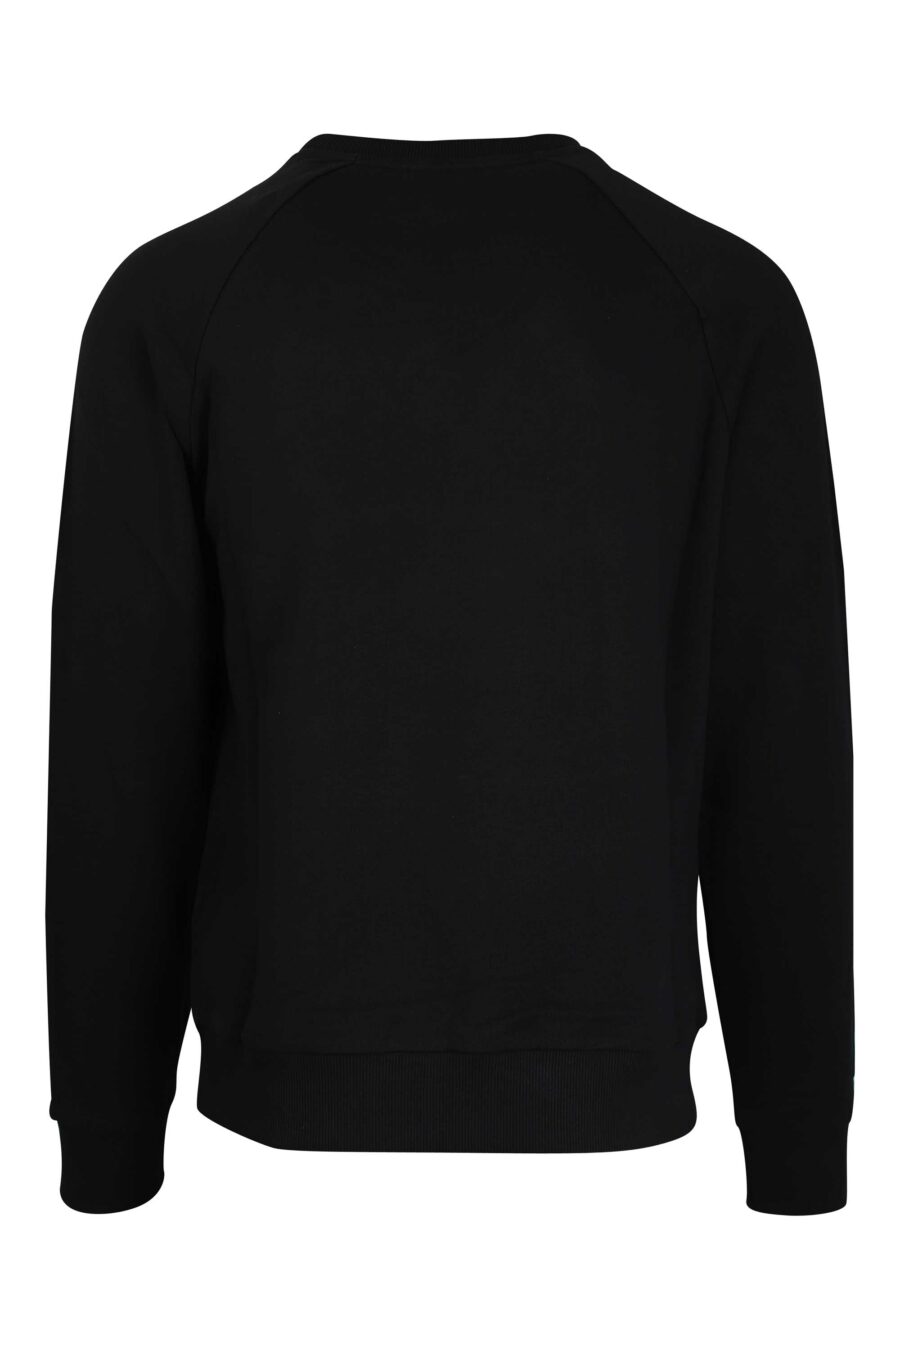 Schwarzes Sweatshirt mit schwarzem Samt maxilogue mit Gold - 3615884199558 3